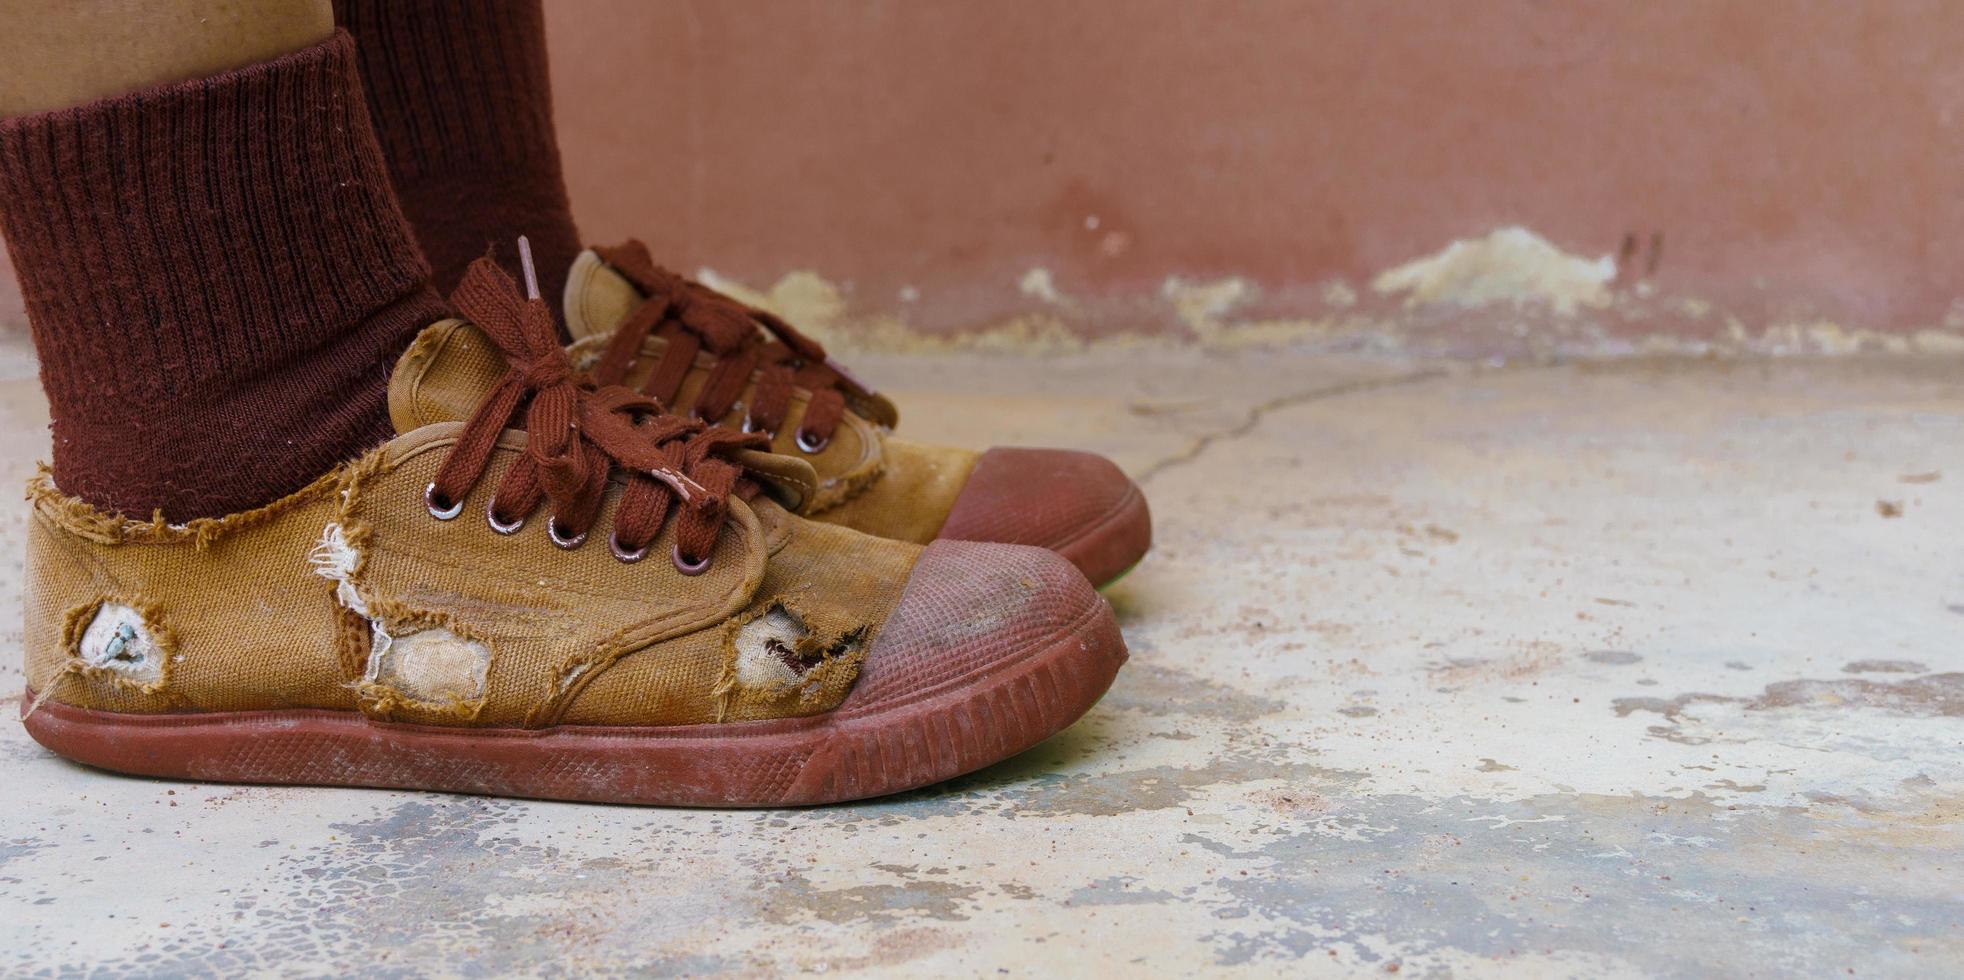 zerrissene Schülerschuhe, Armut ländlicher Schulkinder, die sich oft keine neuen Schuhe leisten können, Highschool-Schülerbeine mit zerrissenen Schuhen, schlechter Mangel an Unterrichtsmaterial, abgenutzte braune alte Turnschuhe foto